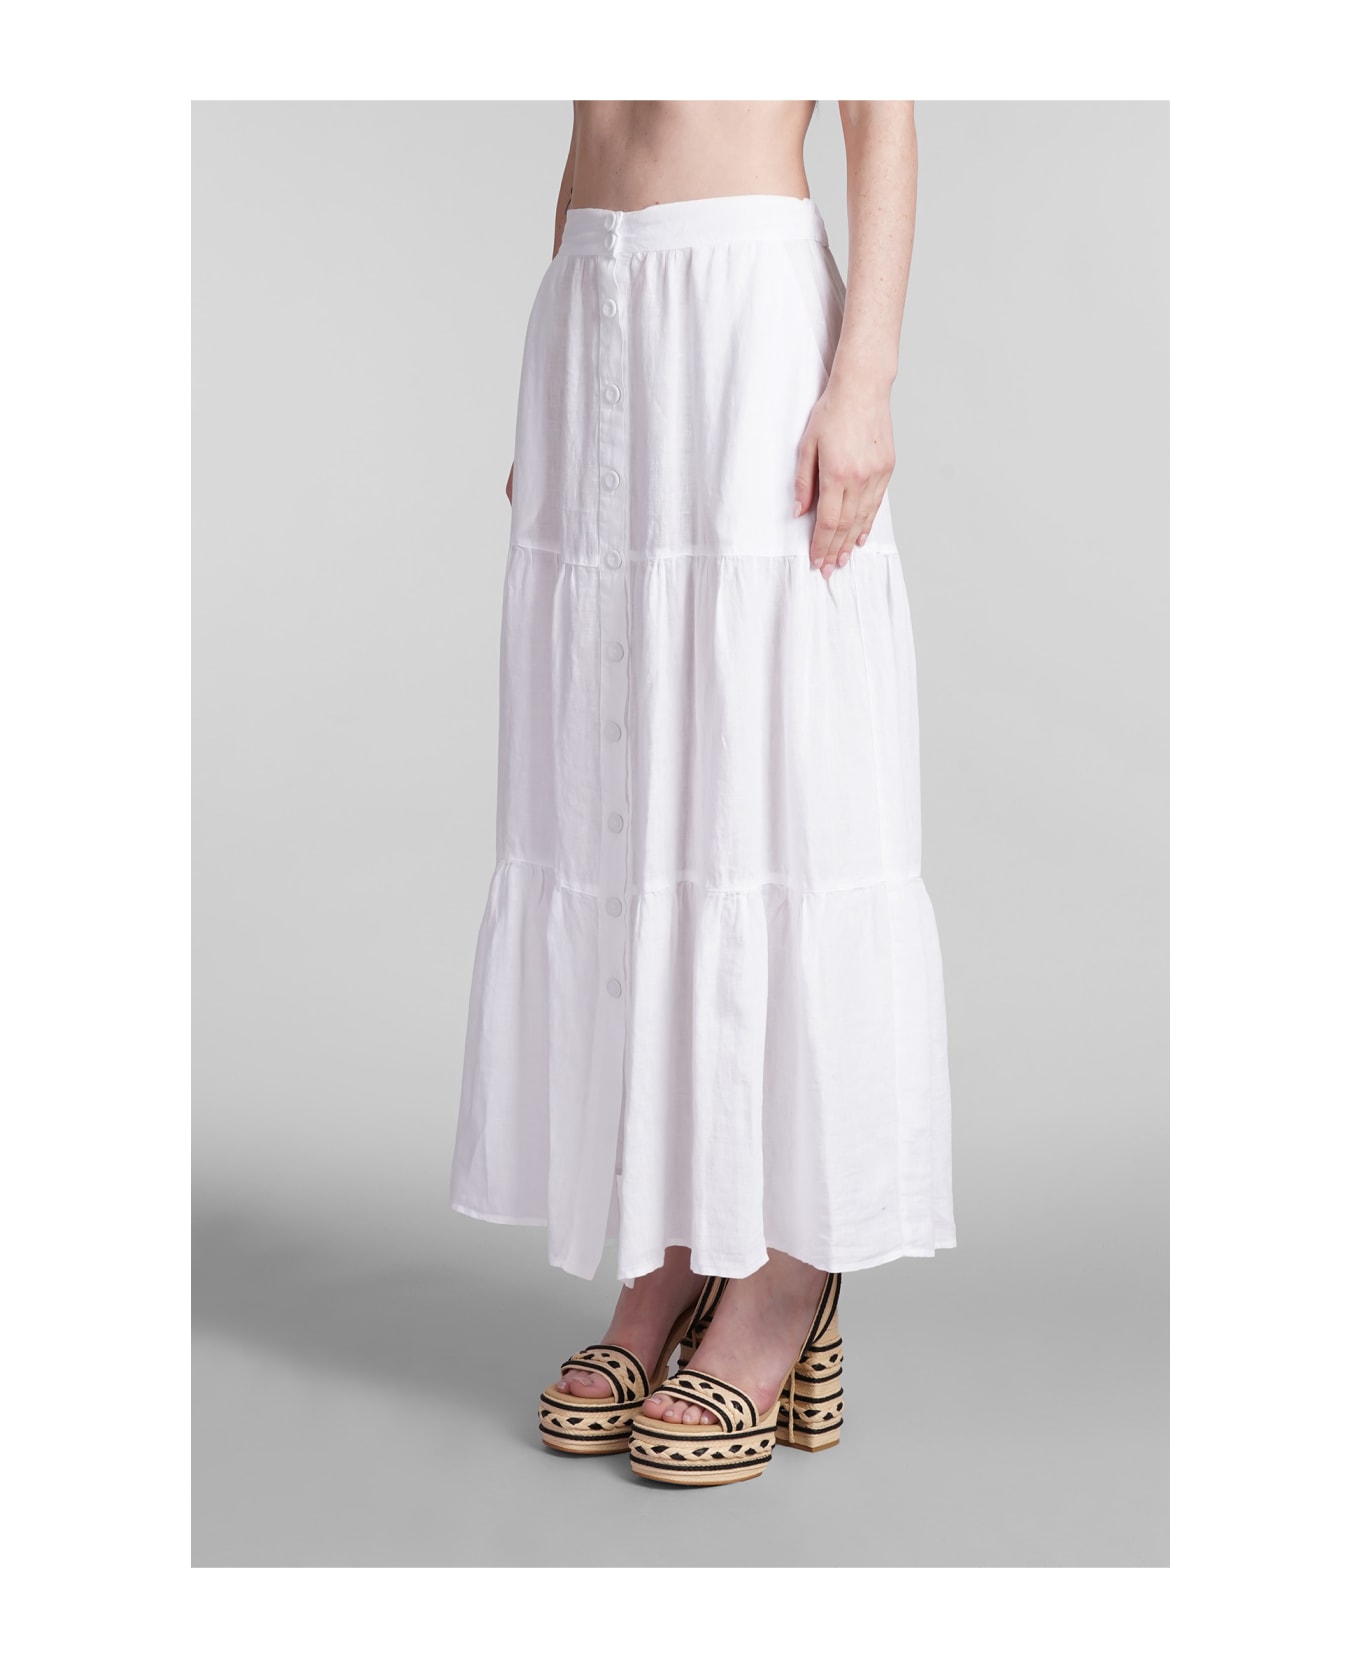 120% Lino Skirt In White Linen - white